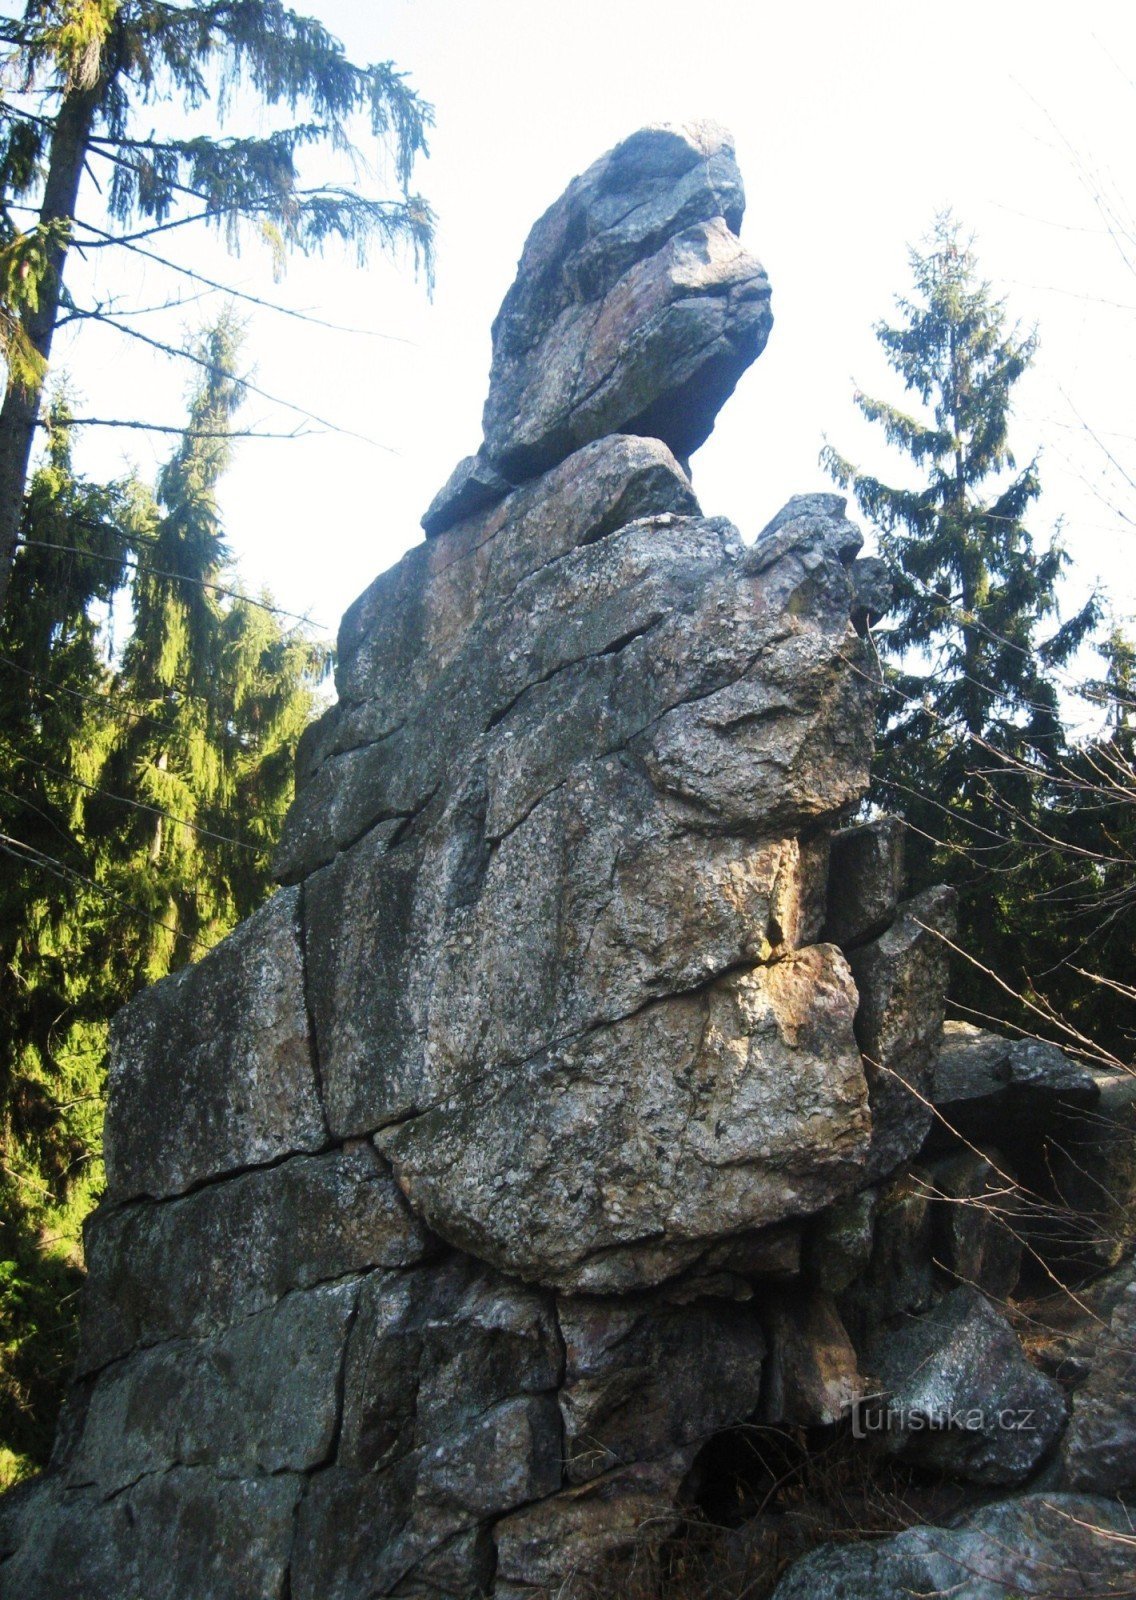 三块石头 - 559 m - Bradelská vrcovina